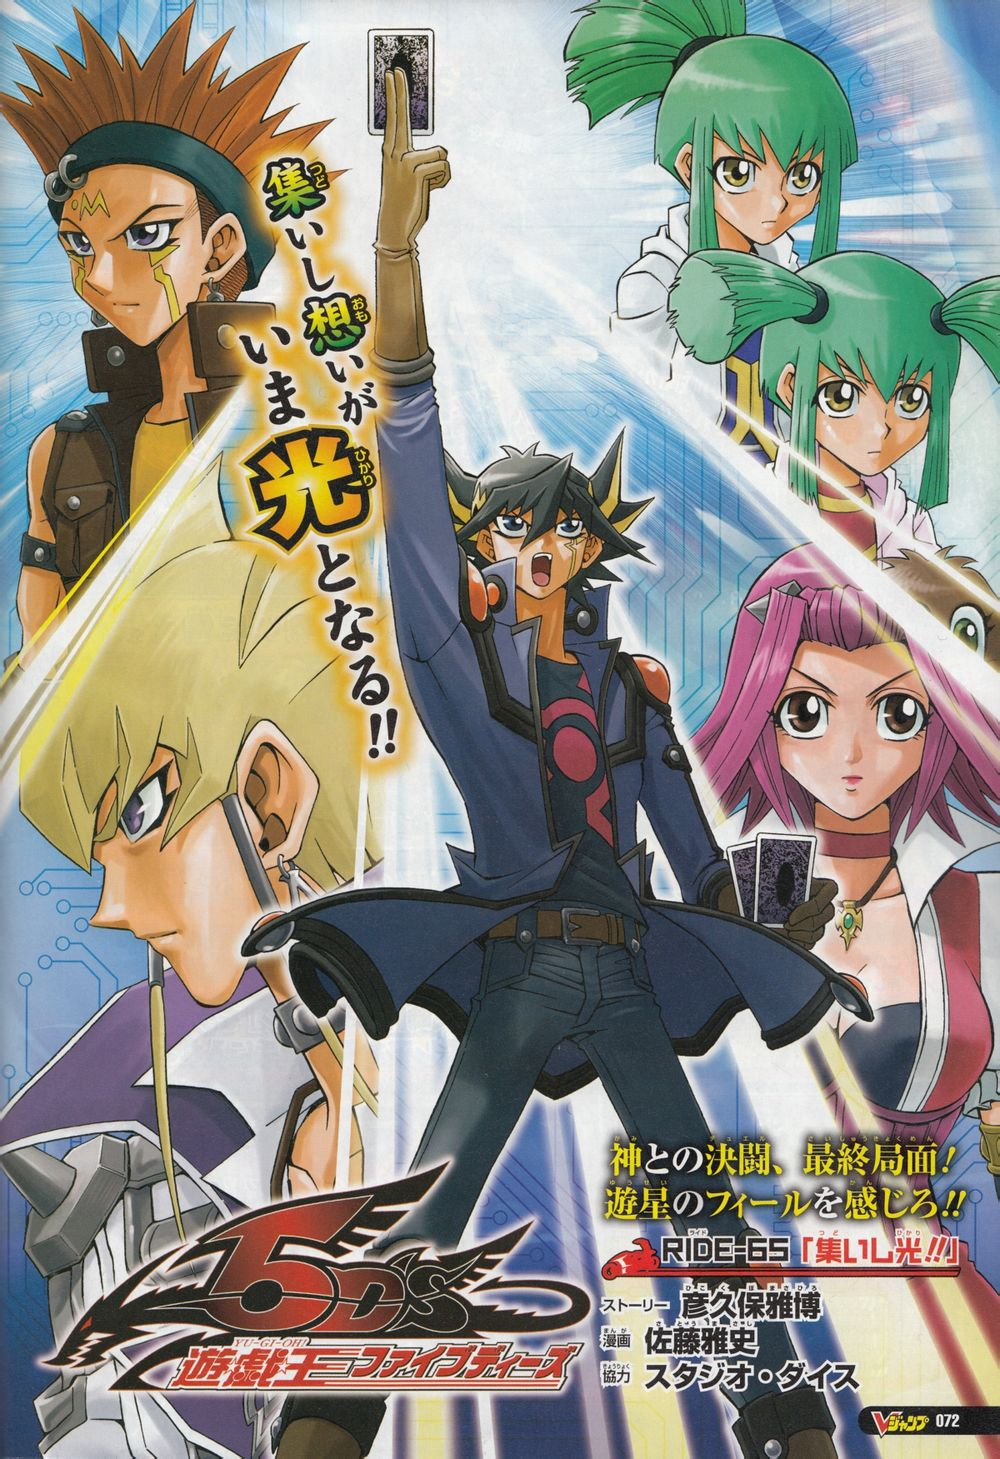  Yu-Gi-Oh! 5D's, Vol. 1: Yusei Fudo, Turbo Duelist